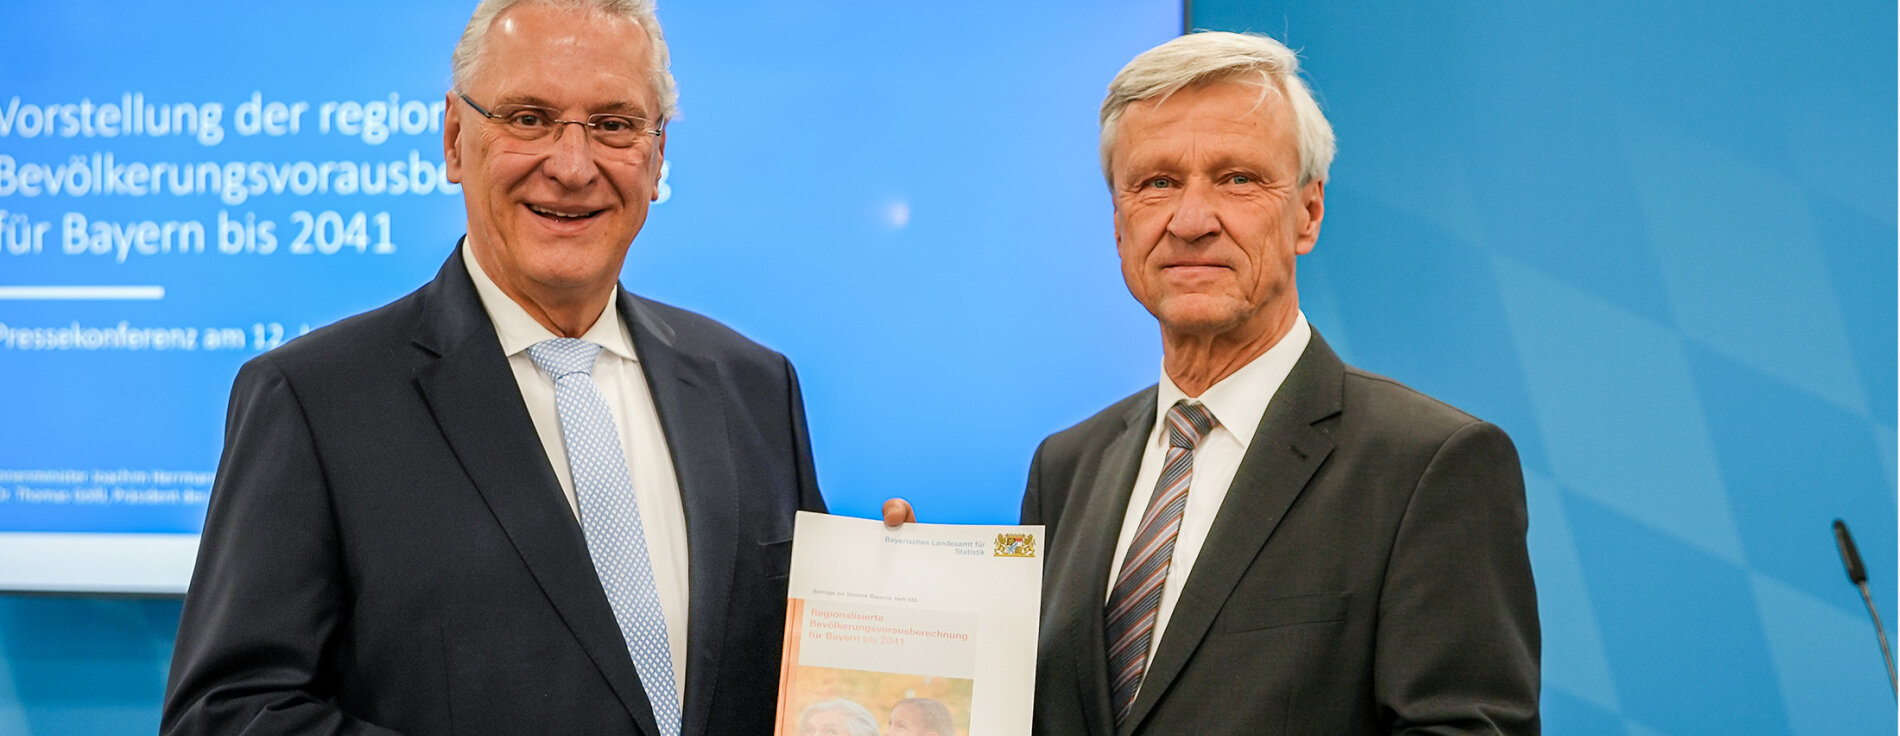 Innenminister Joachim Herrmann und Dr. Thomas Gößl mit Broschüre in der Hand, im Hintergrund Präsentation